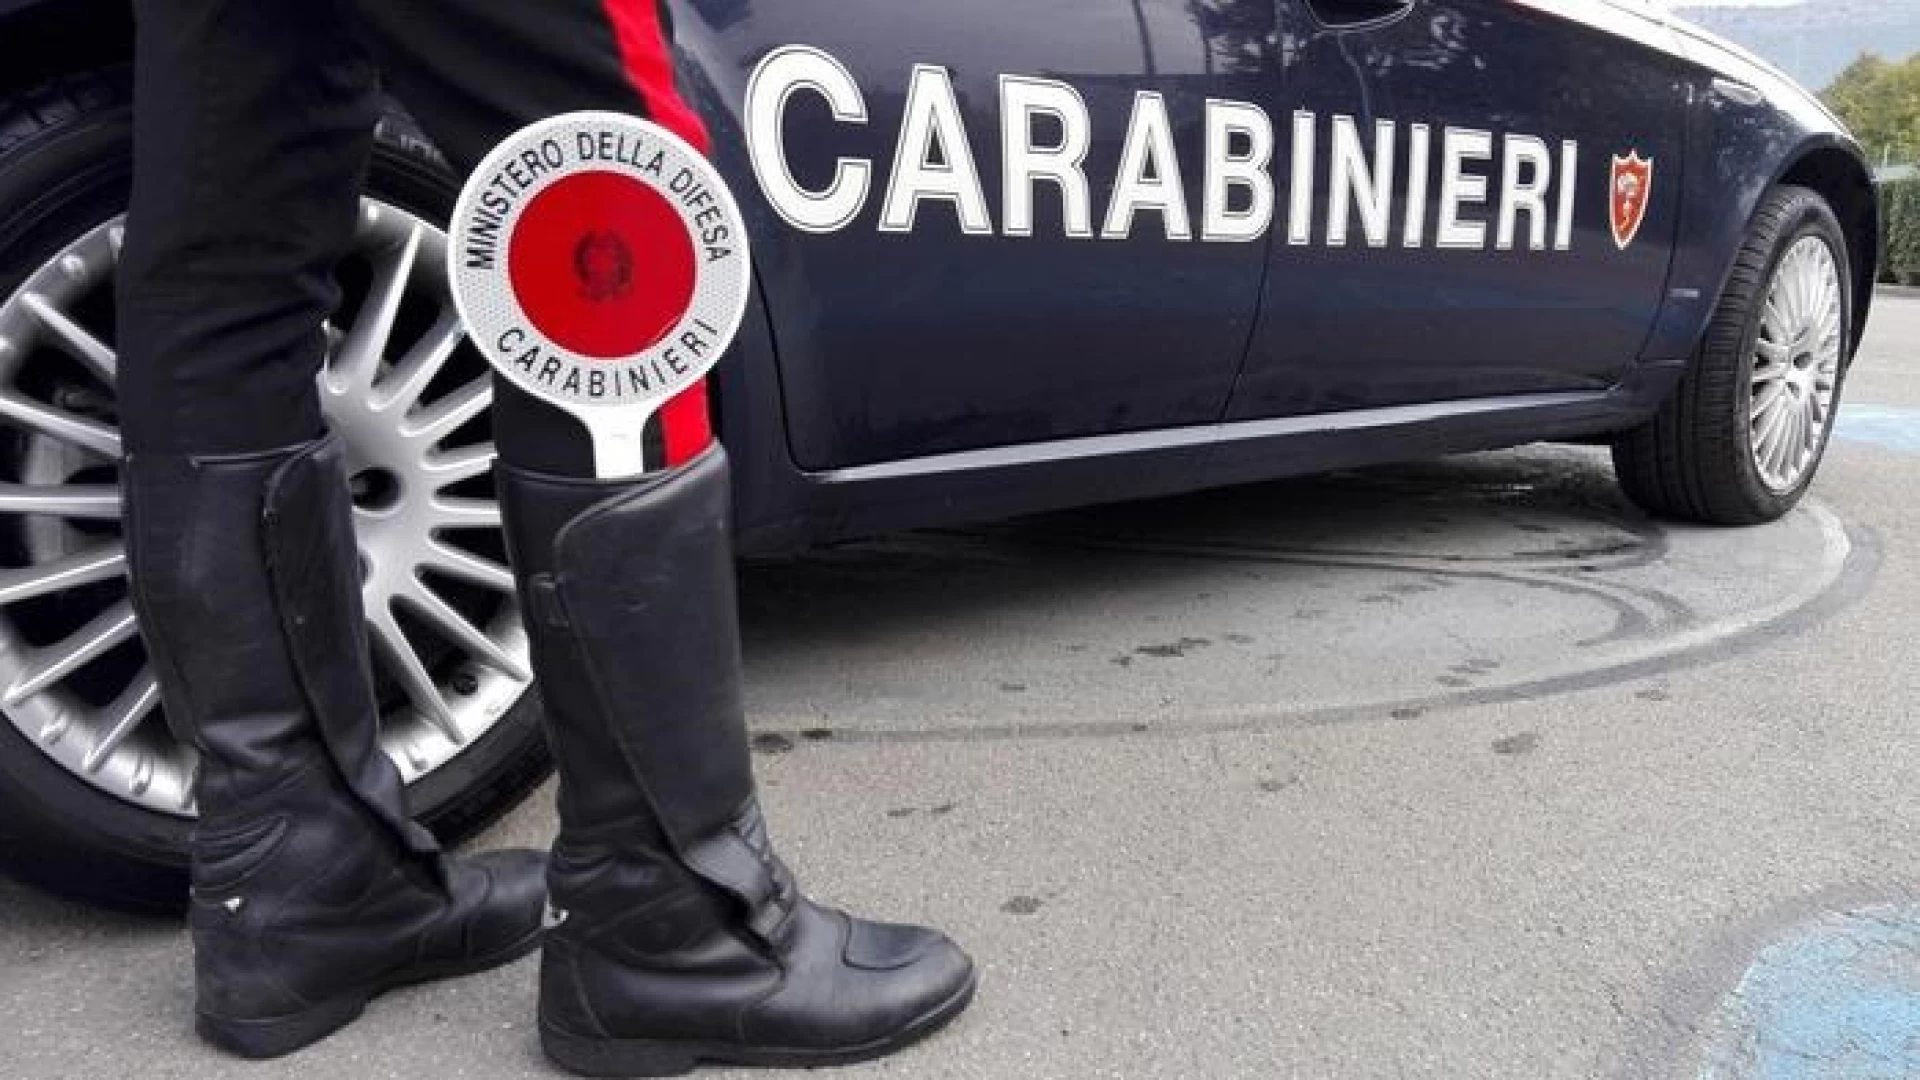 Sulmona: I Carabinieri salvano una donna che stava tentando il suicidio sulla tratta ferroviaria per Roma